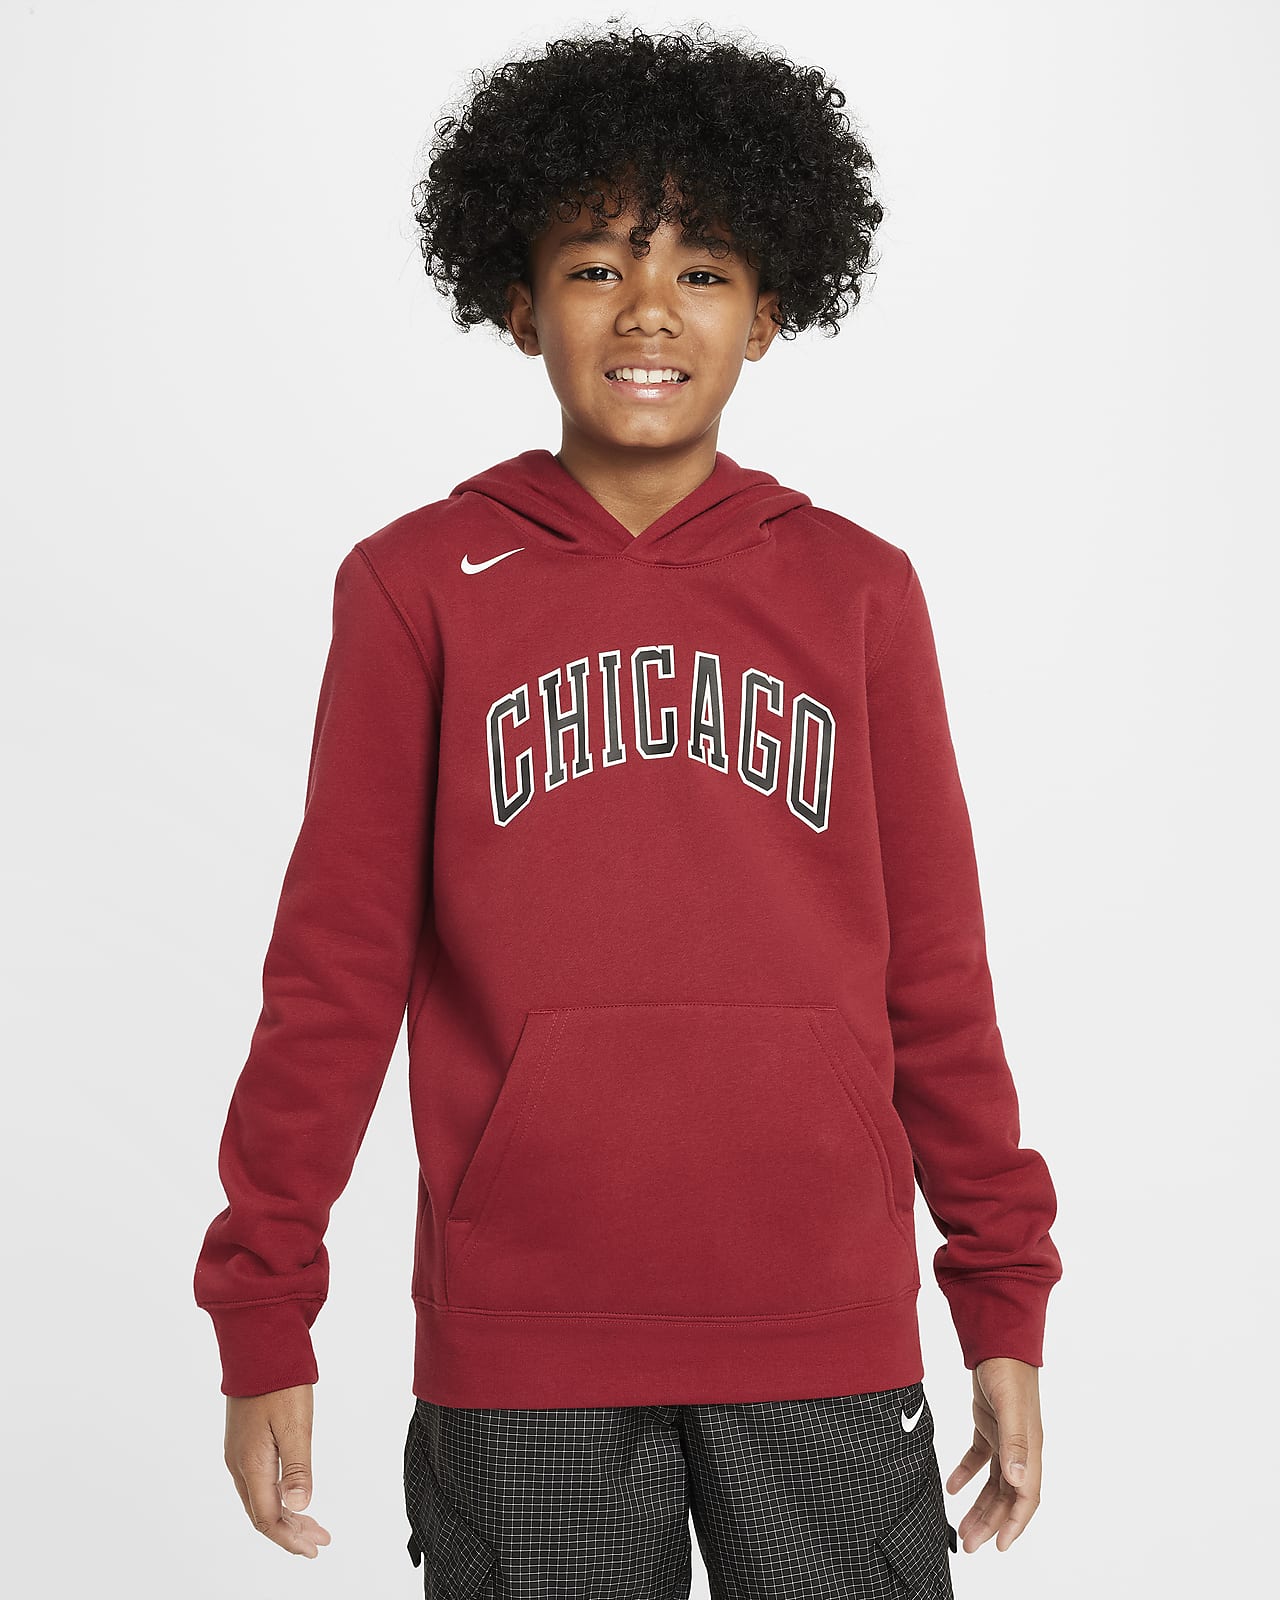 Chicago Bulls City Edition Sudadera con capucha de tejido Fleece Nike de la NBA - Niño/a